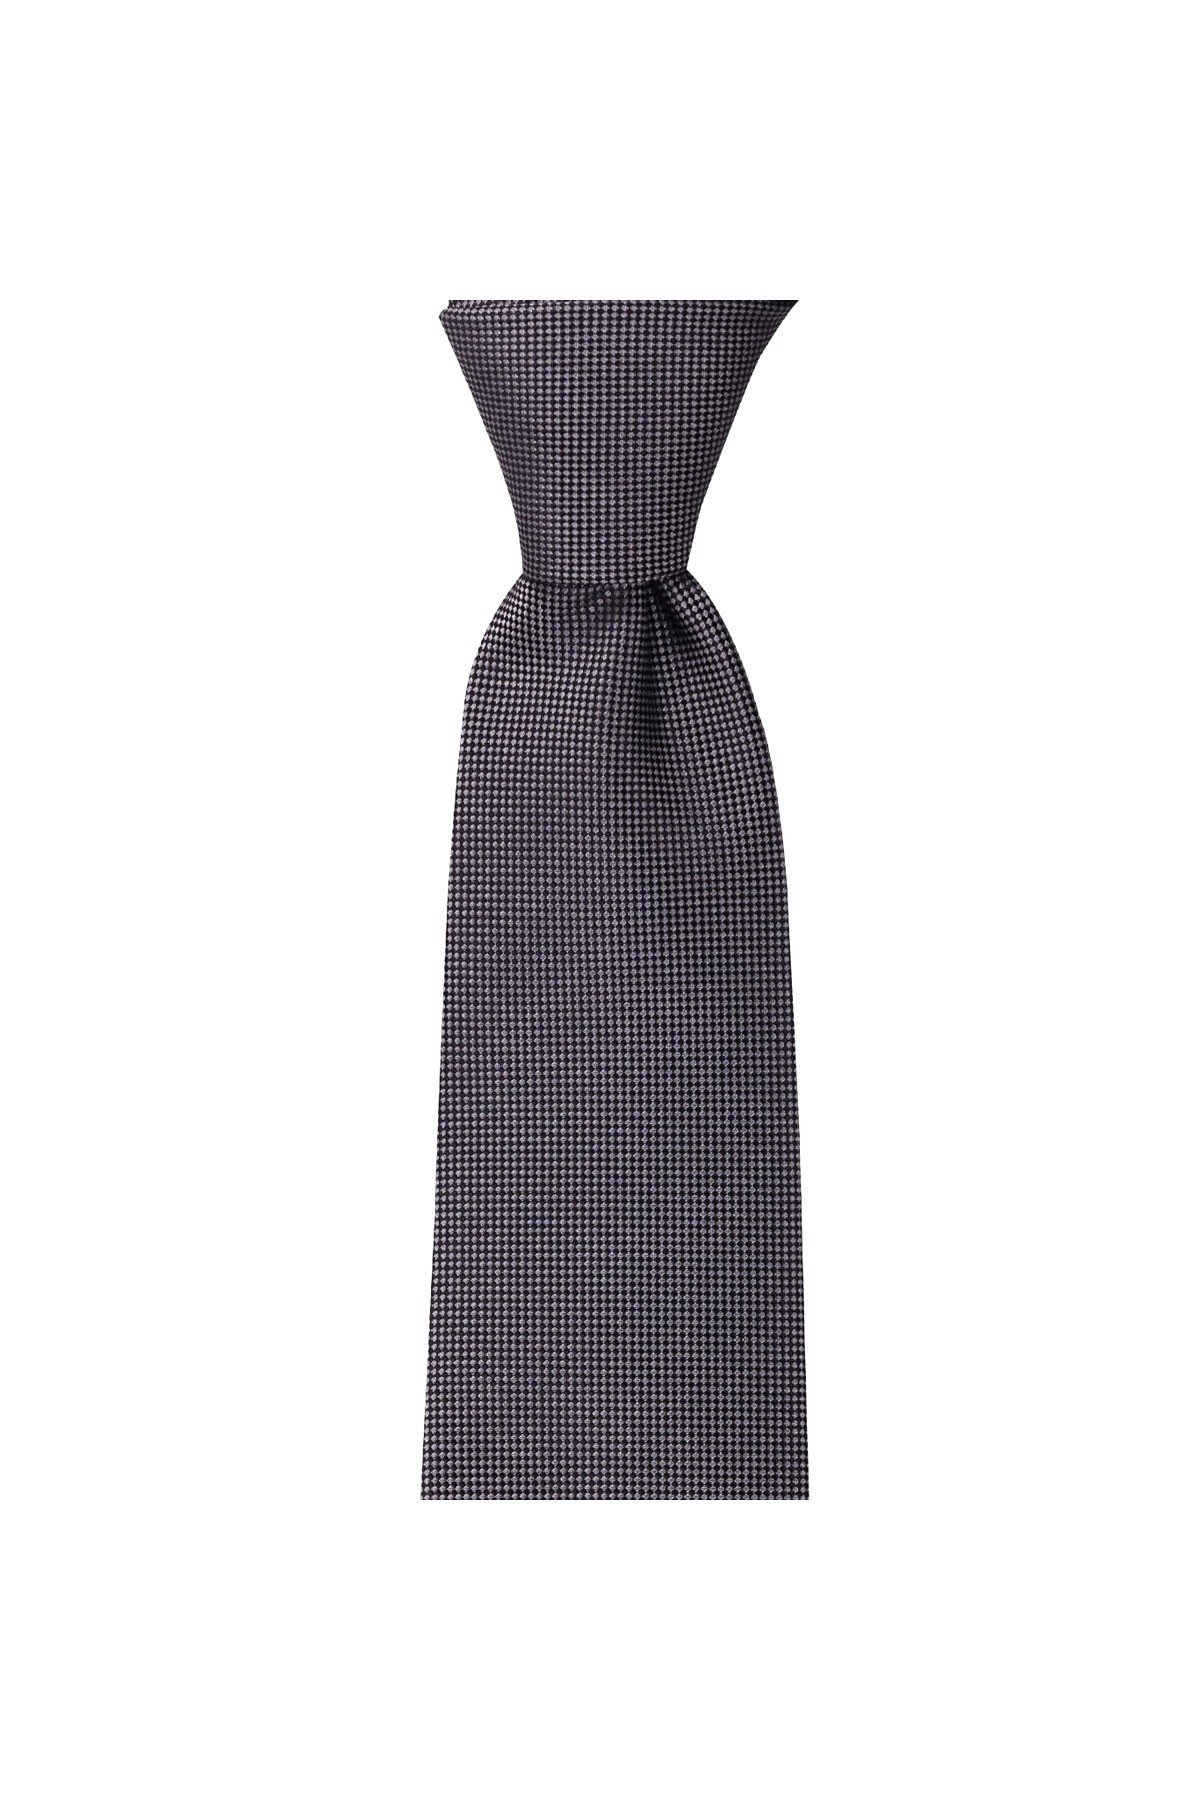 Düz renkli 8 cm genişliğinde mendilli kravat - Koyu gri